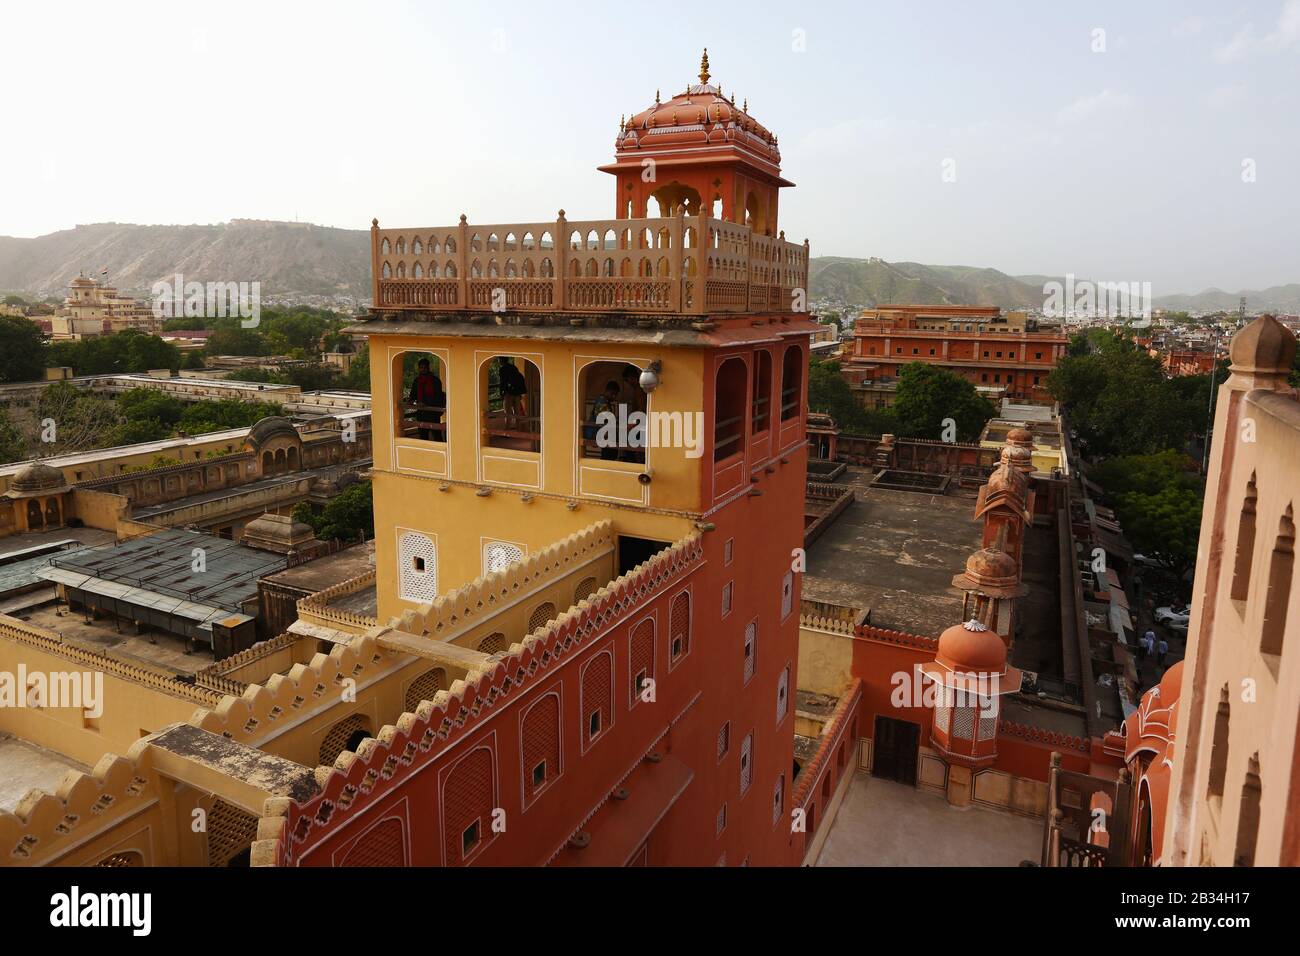 Vue de dessus, Palais des vents, Hawa Mahal, Jaipur, Rajasthan, Inde Banque D'Images